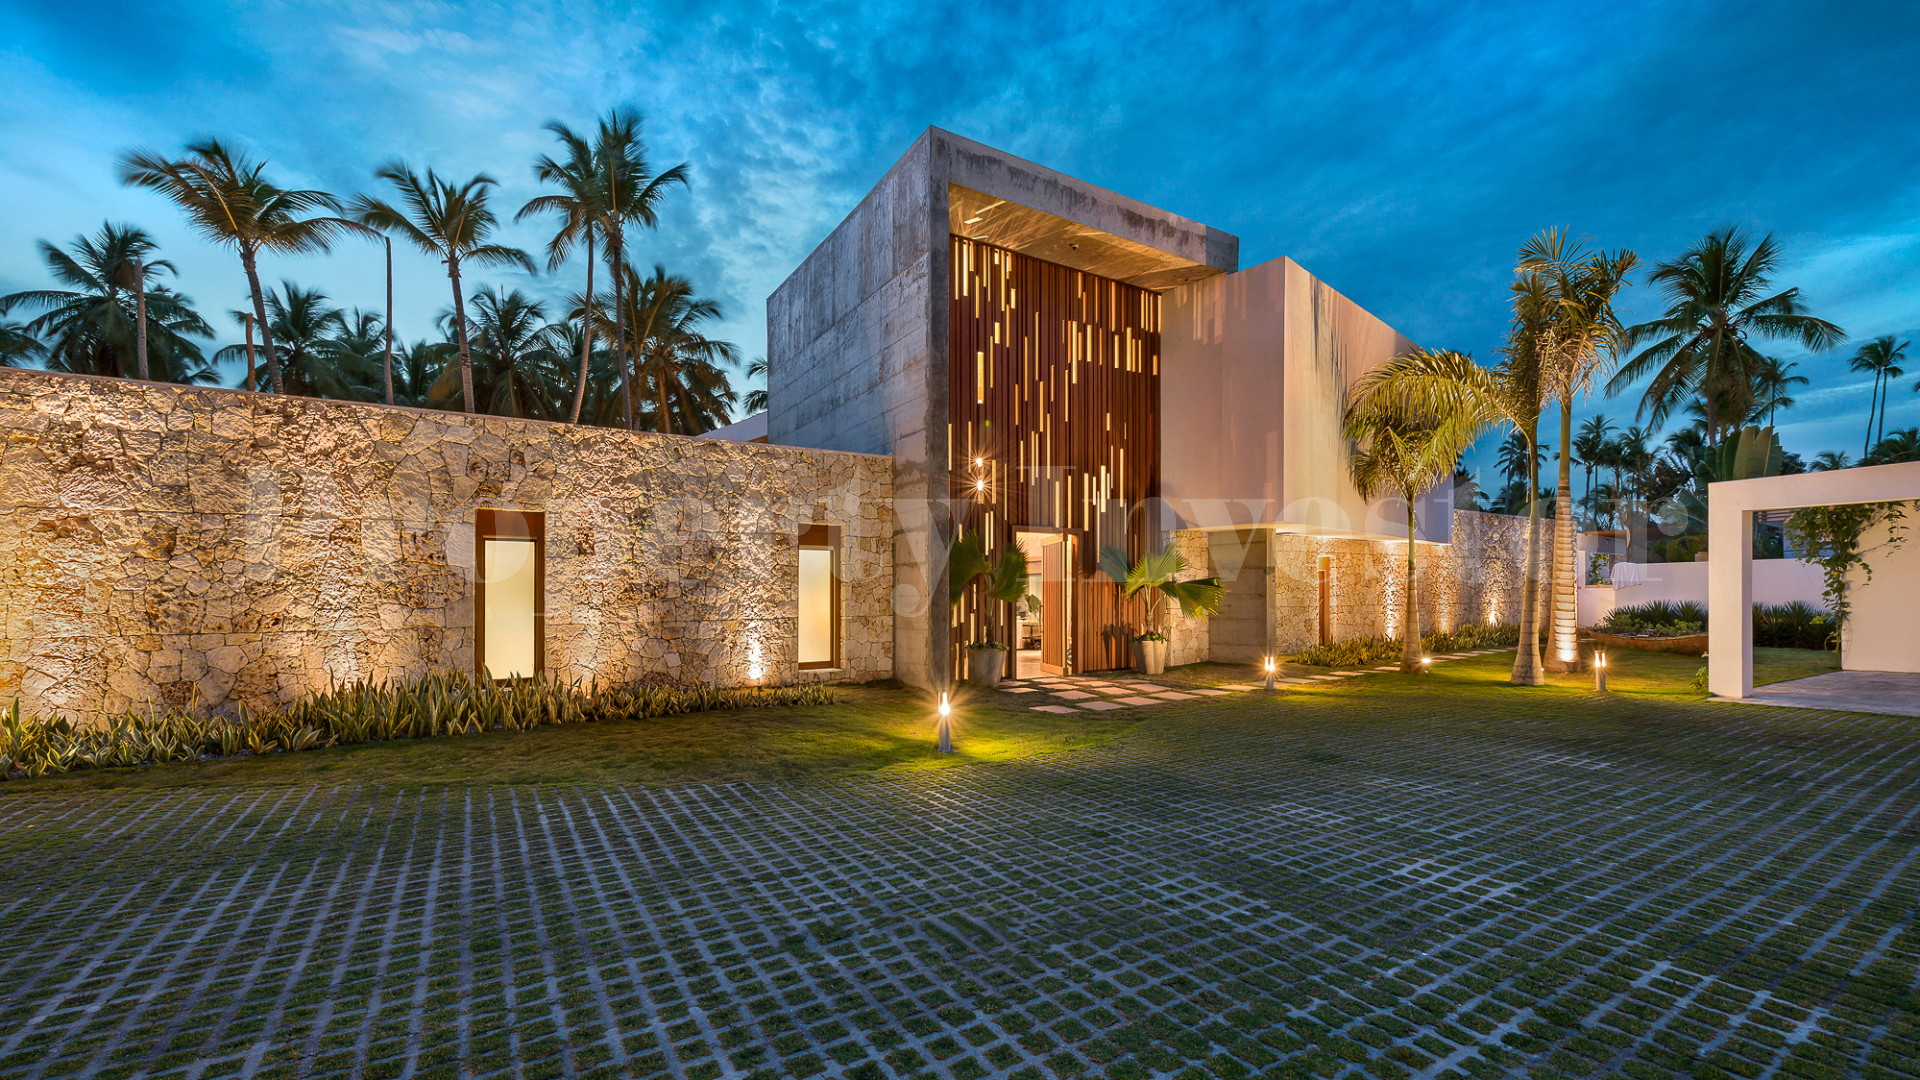 Incredible 5 Bedroom Ultra Luxurious Designer Villa for Sale in Las Terrenas, Dominican Republic